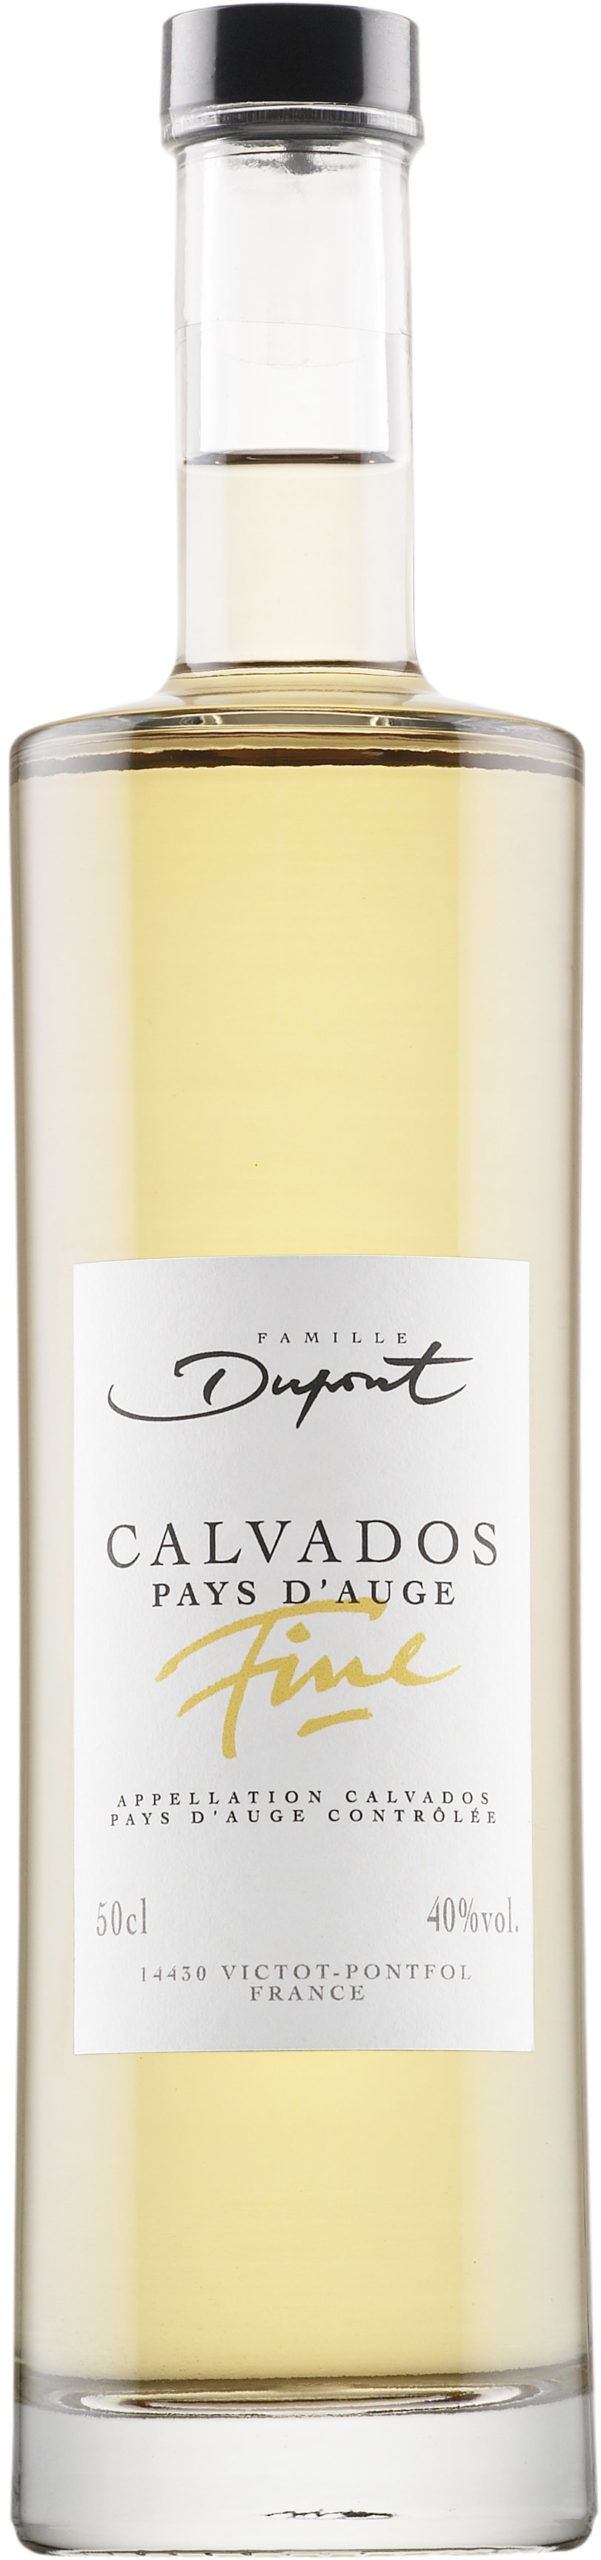 Dupont Fine Calvados